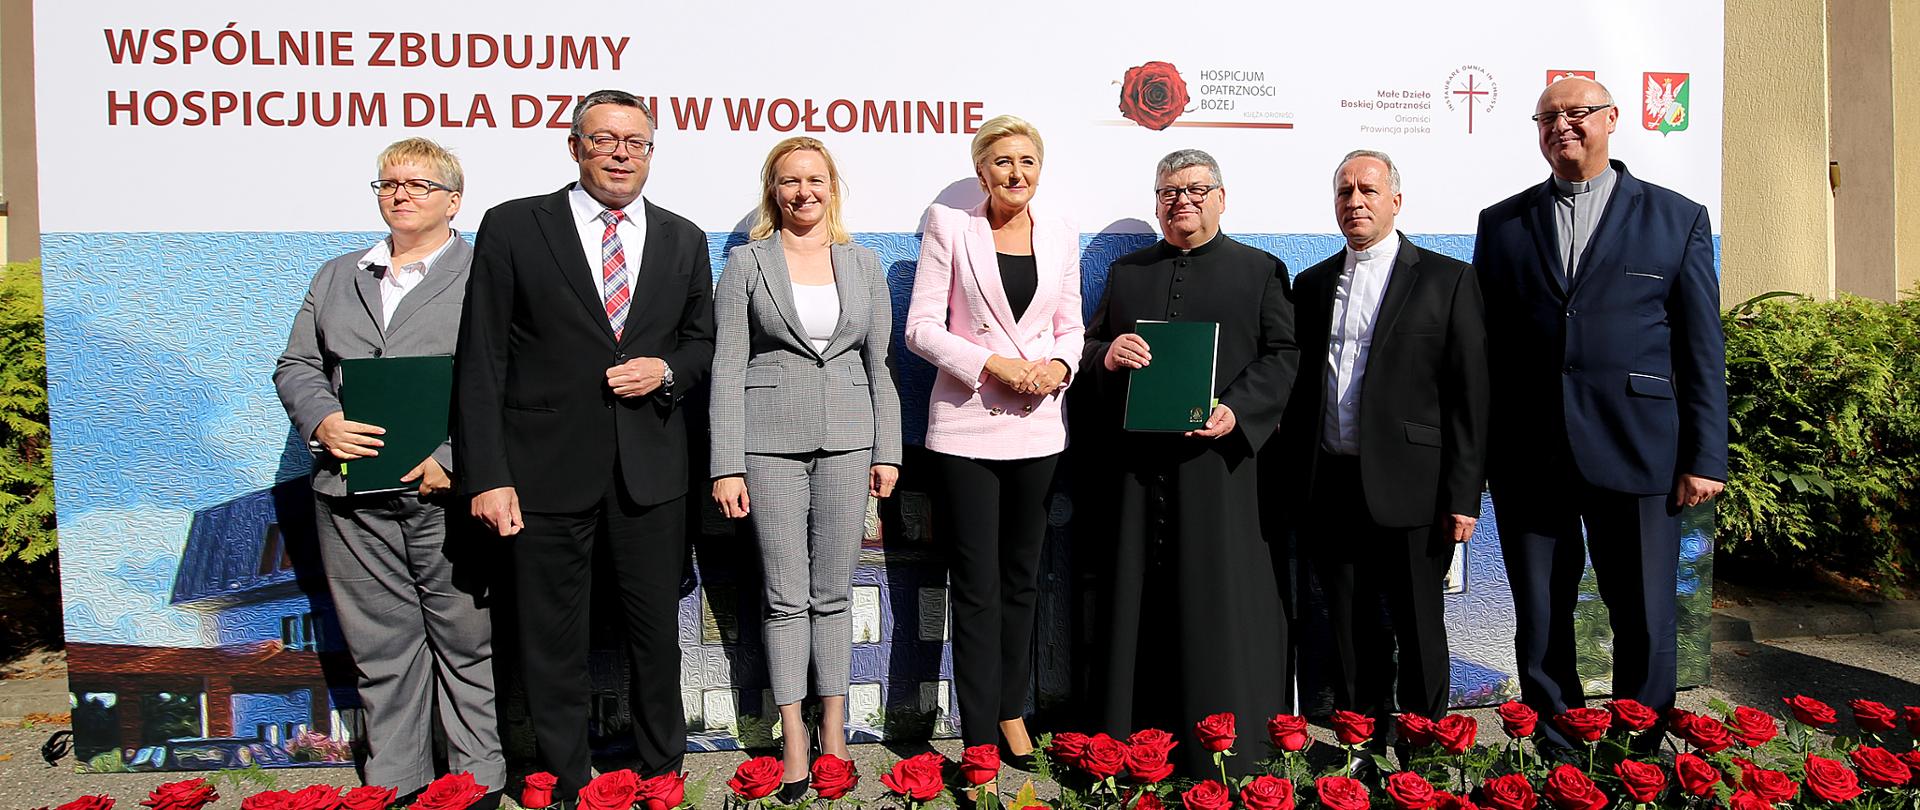 Uroczystość podpisania umowy w Wołominie